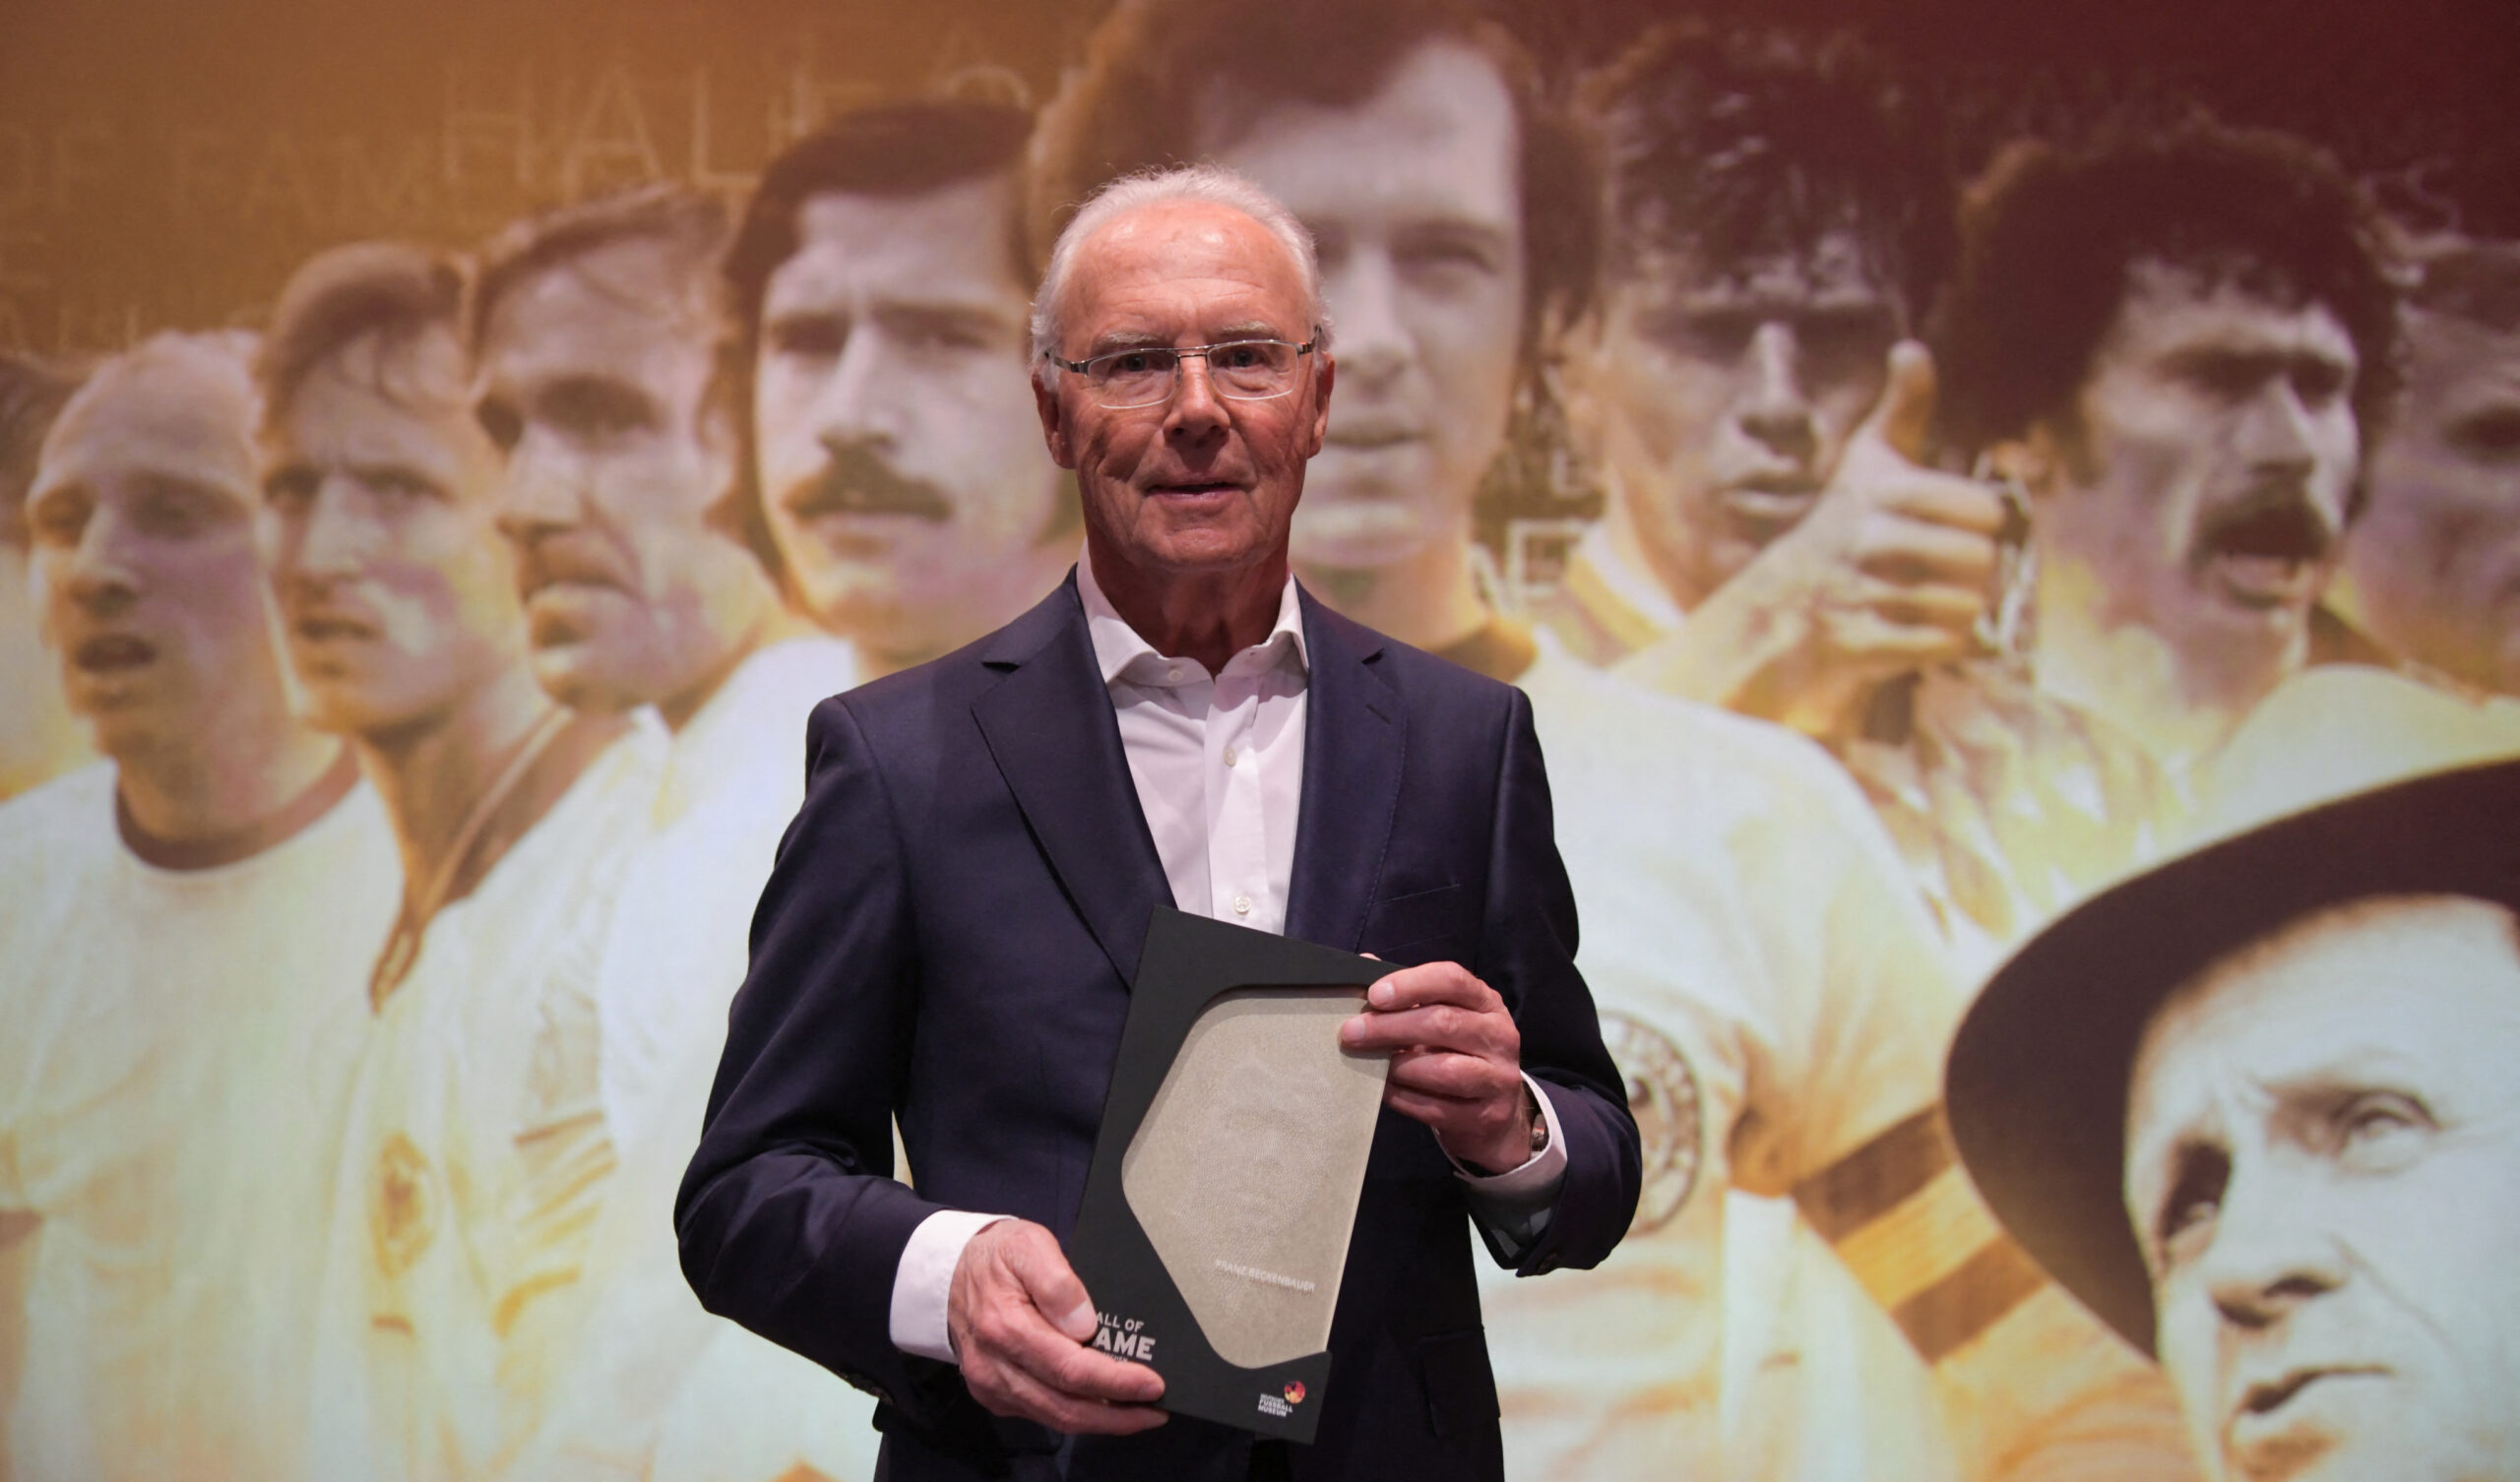 Luto! Beckenbauer, bicampeão mundial com a Alemanha, morre aos 78 anos